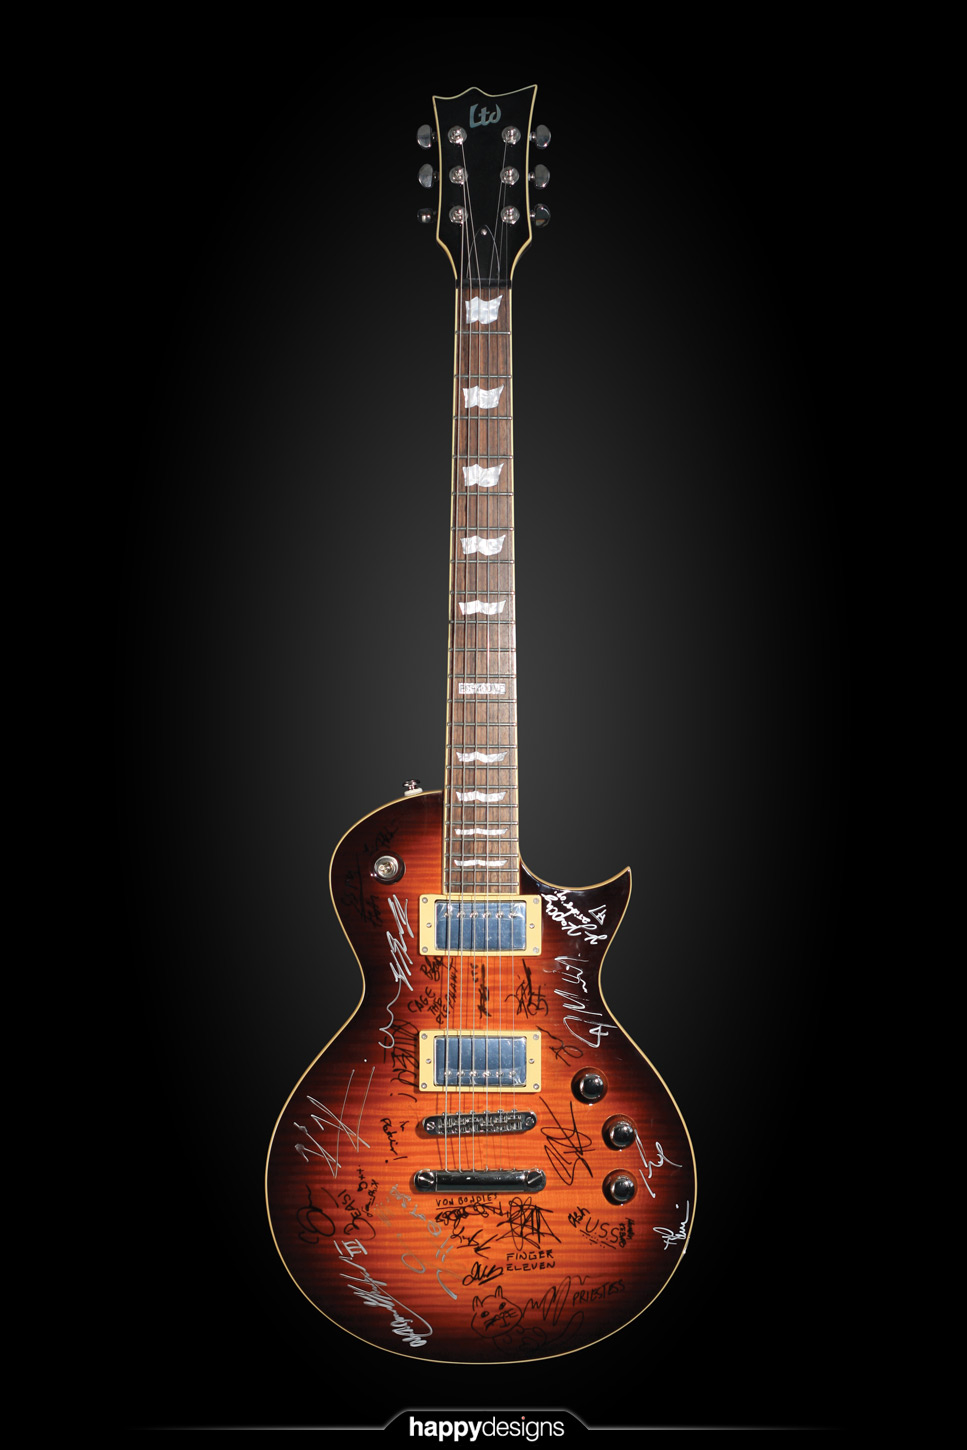 20091117 - Star Guitar 7.0